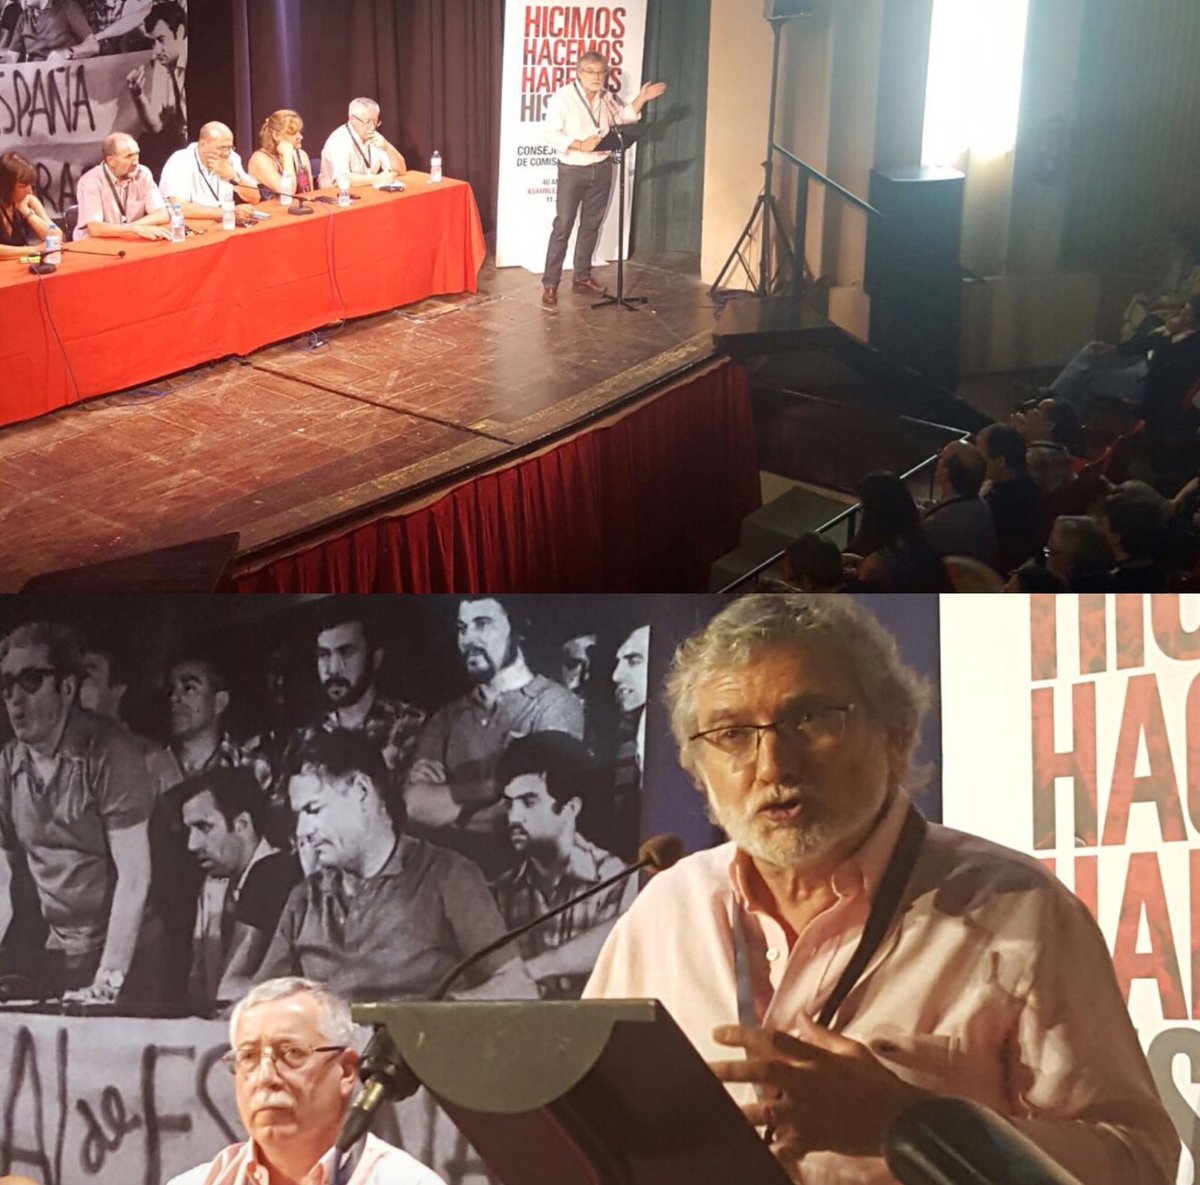 Galera de imgenes 40 aniversario asamblea de Barcelona